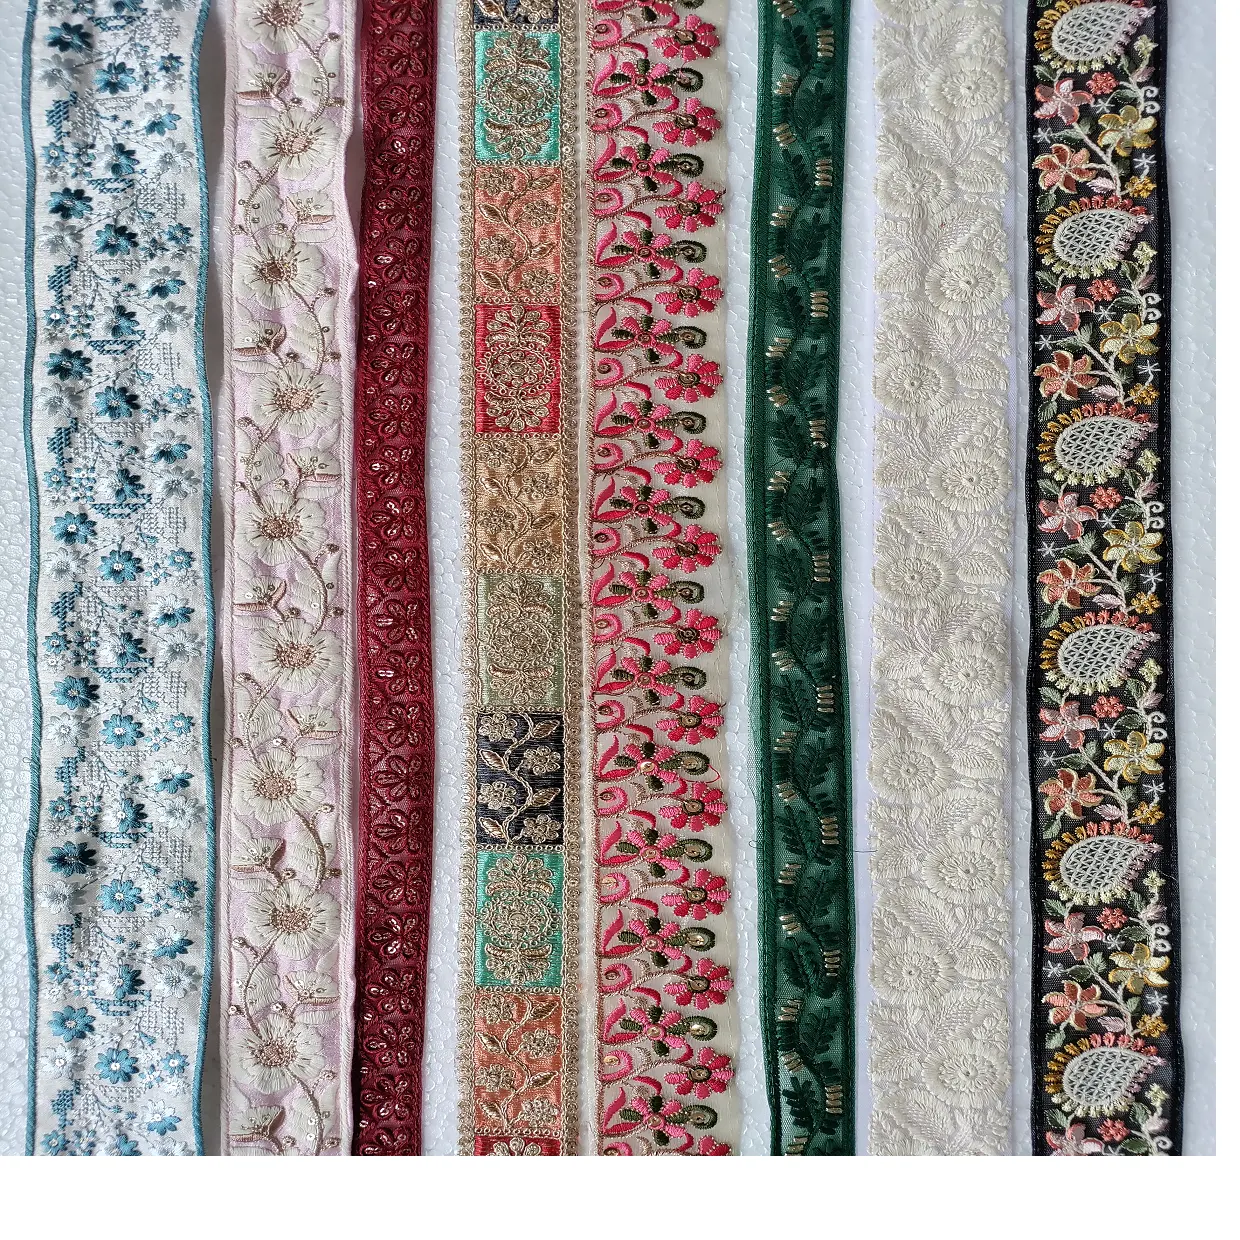 Maßge schneiderte maschinen gestickte Bänder und Schnürsenkel in verschiedenen verschiedenen Designs und Farben für Brautkleider